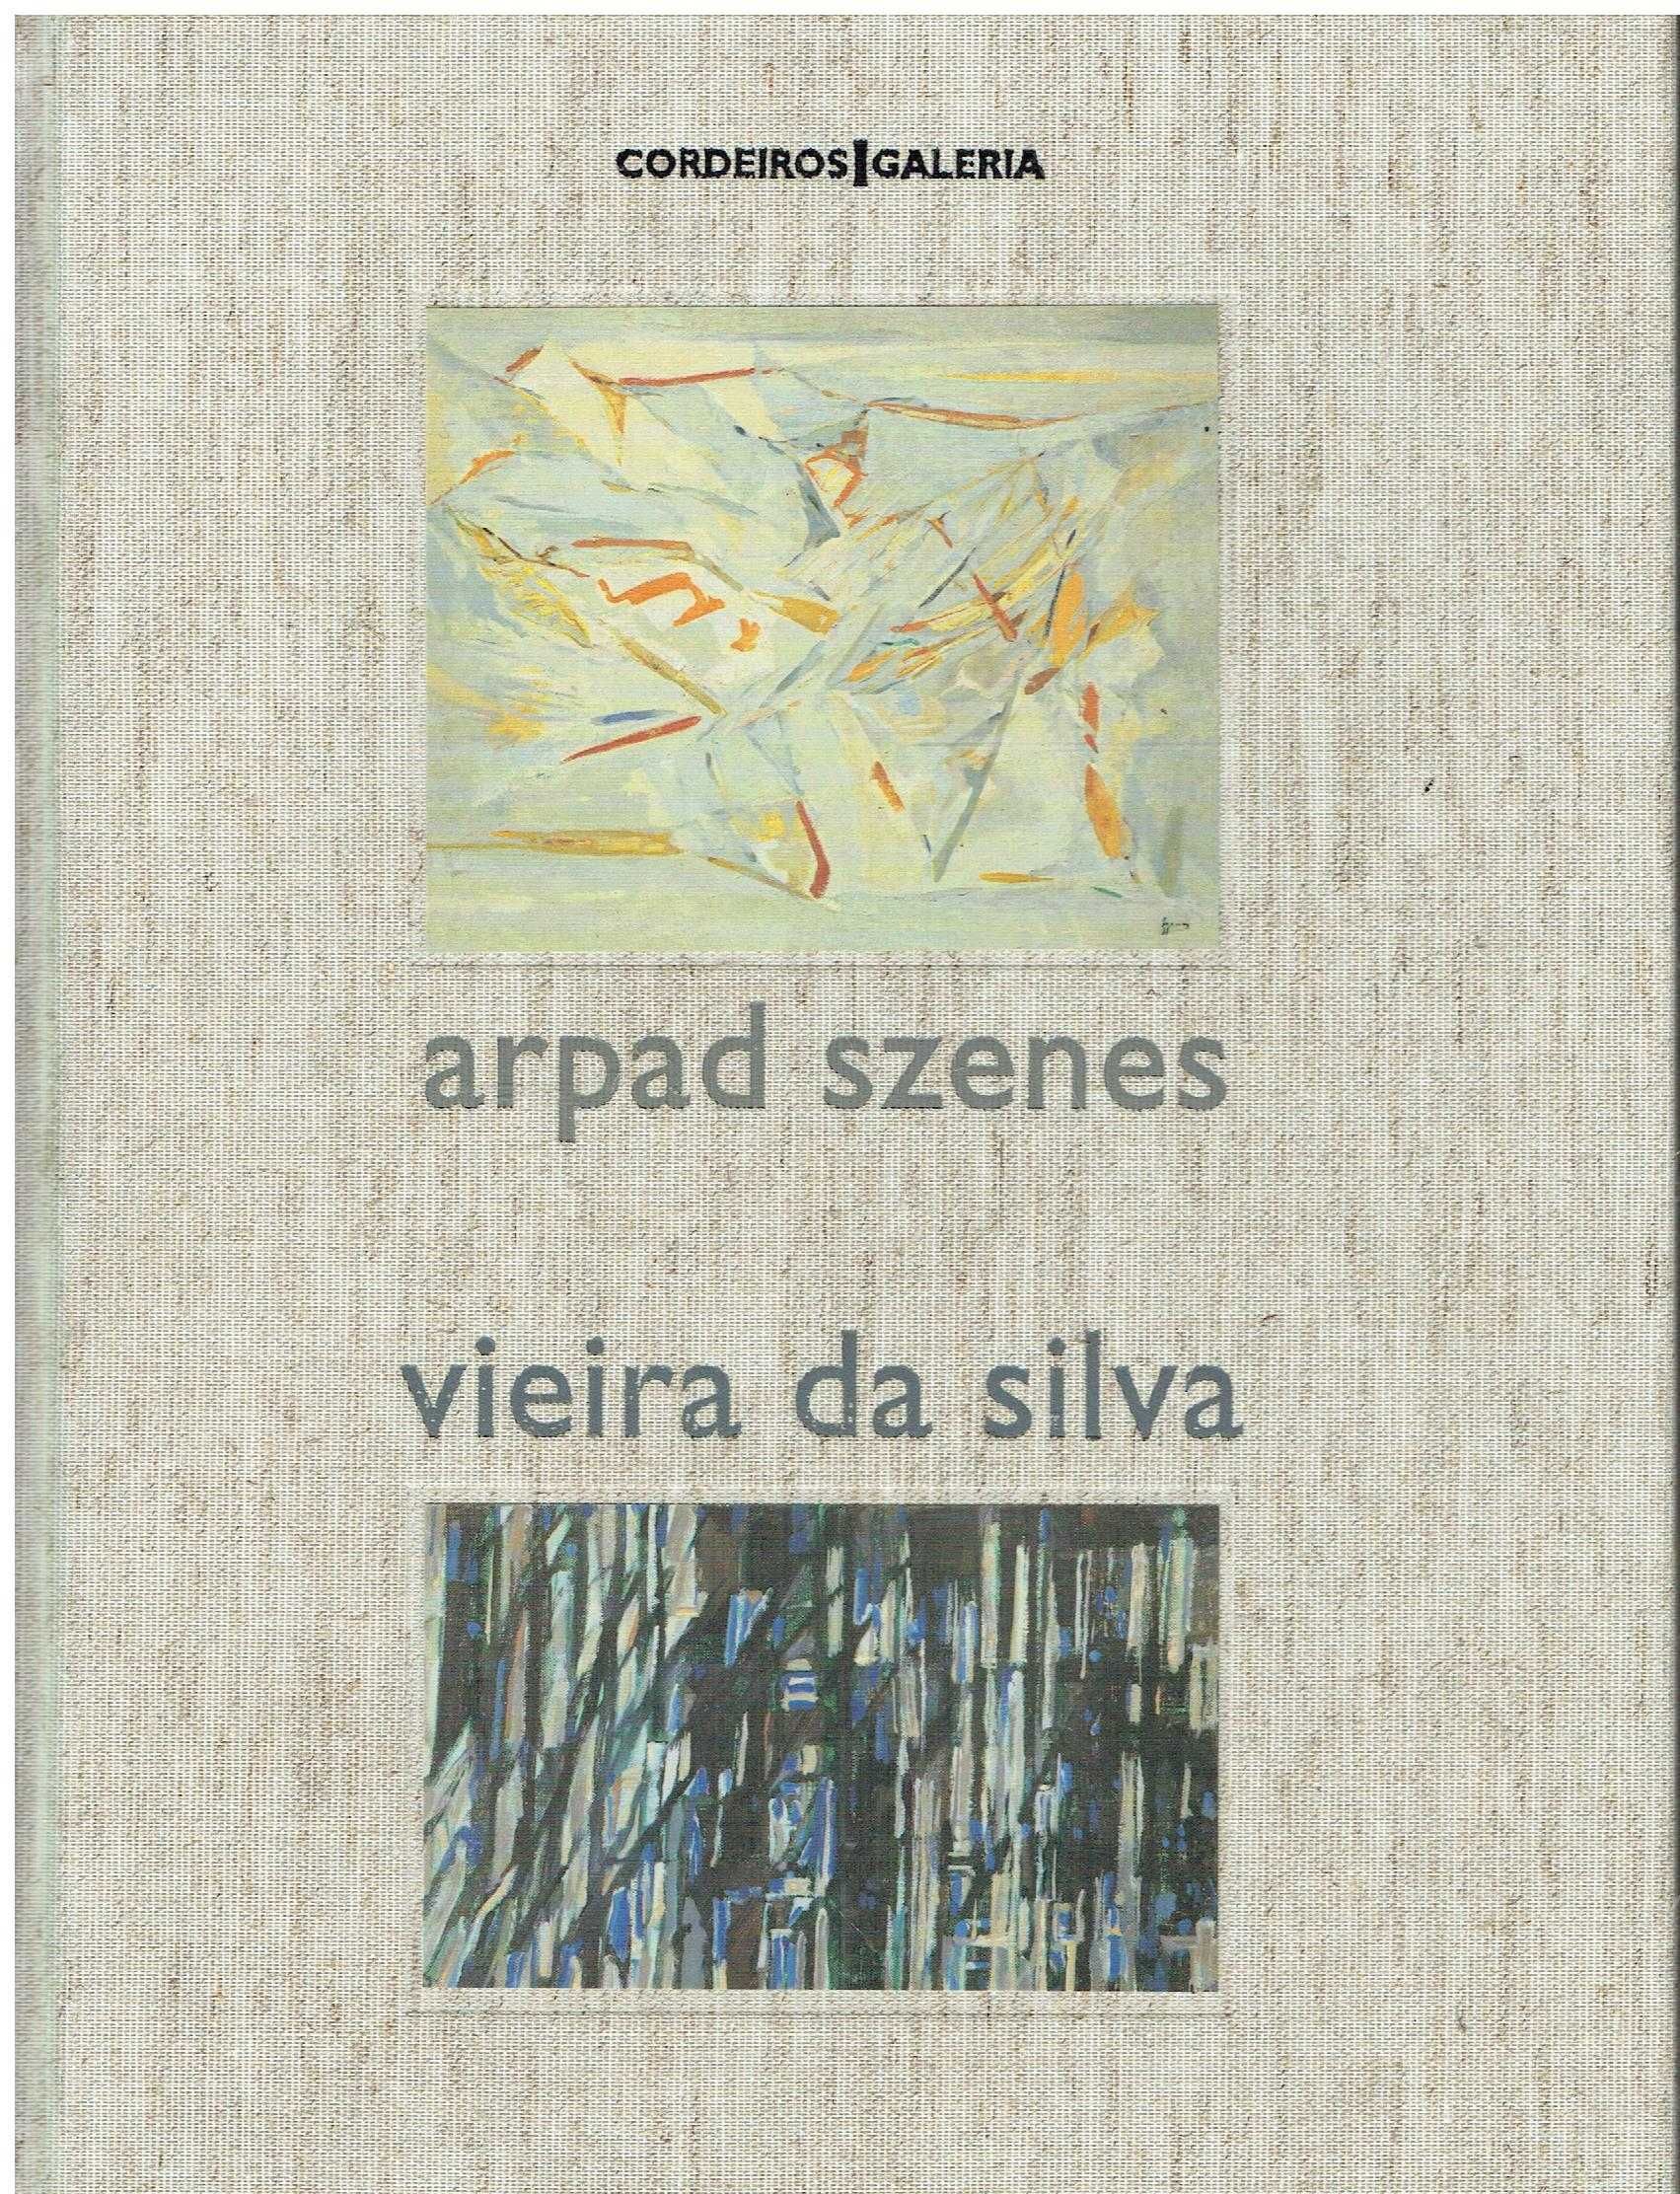 11735

Arpad Szenes e Vieira da Silva

Cordeiros Galeria